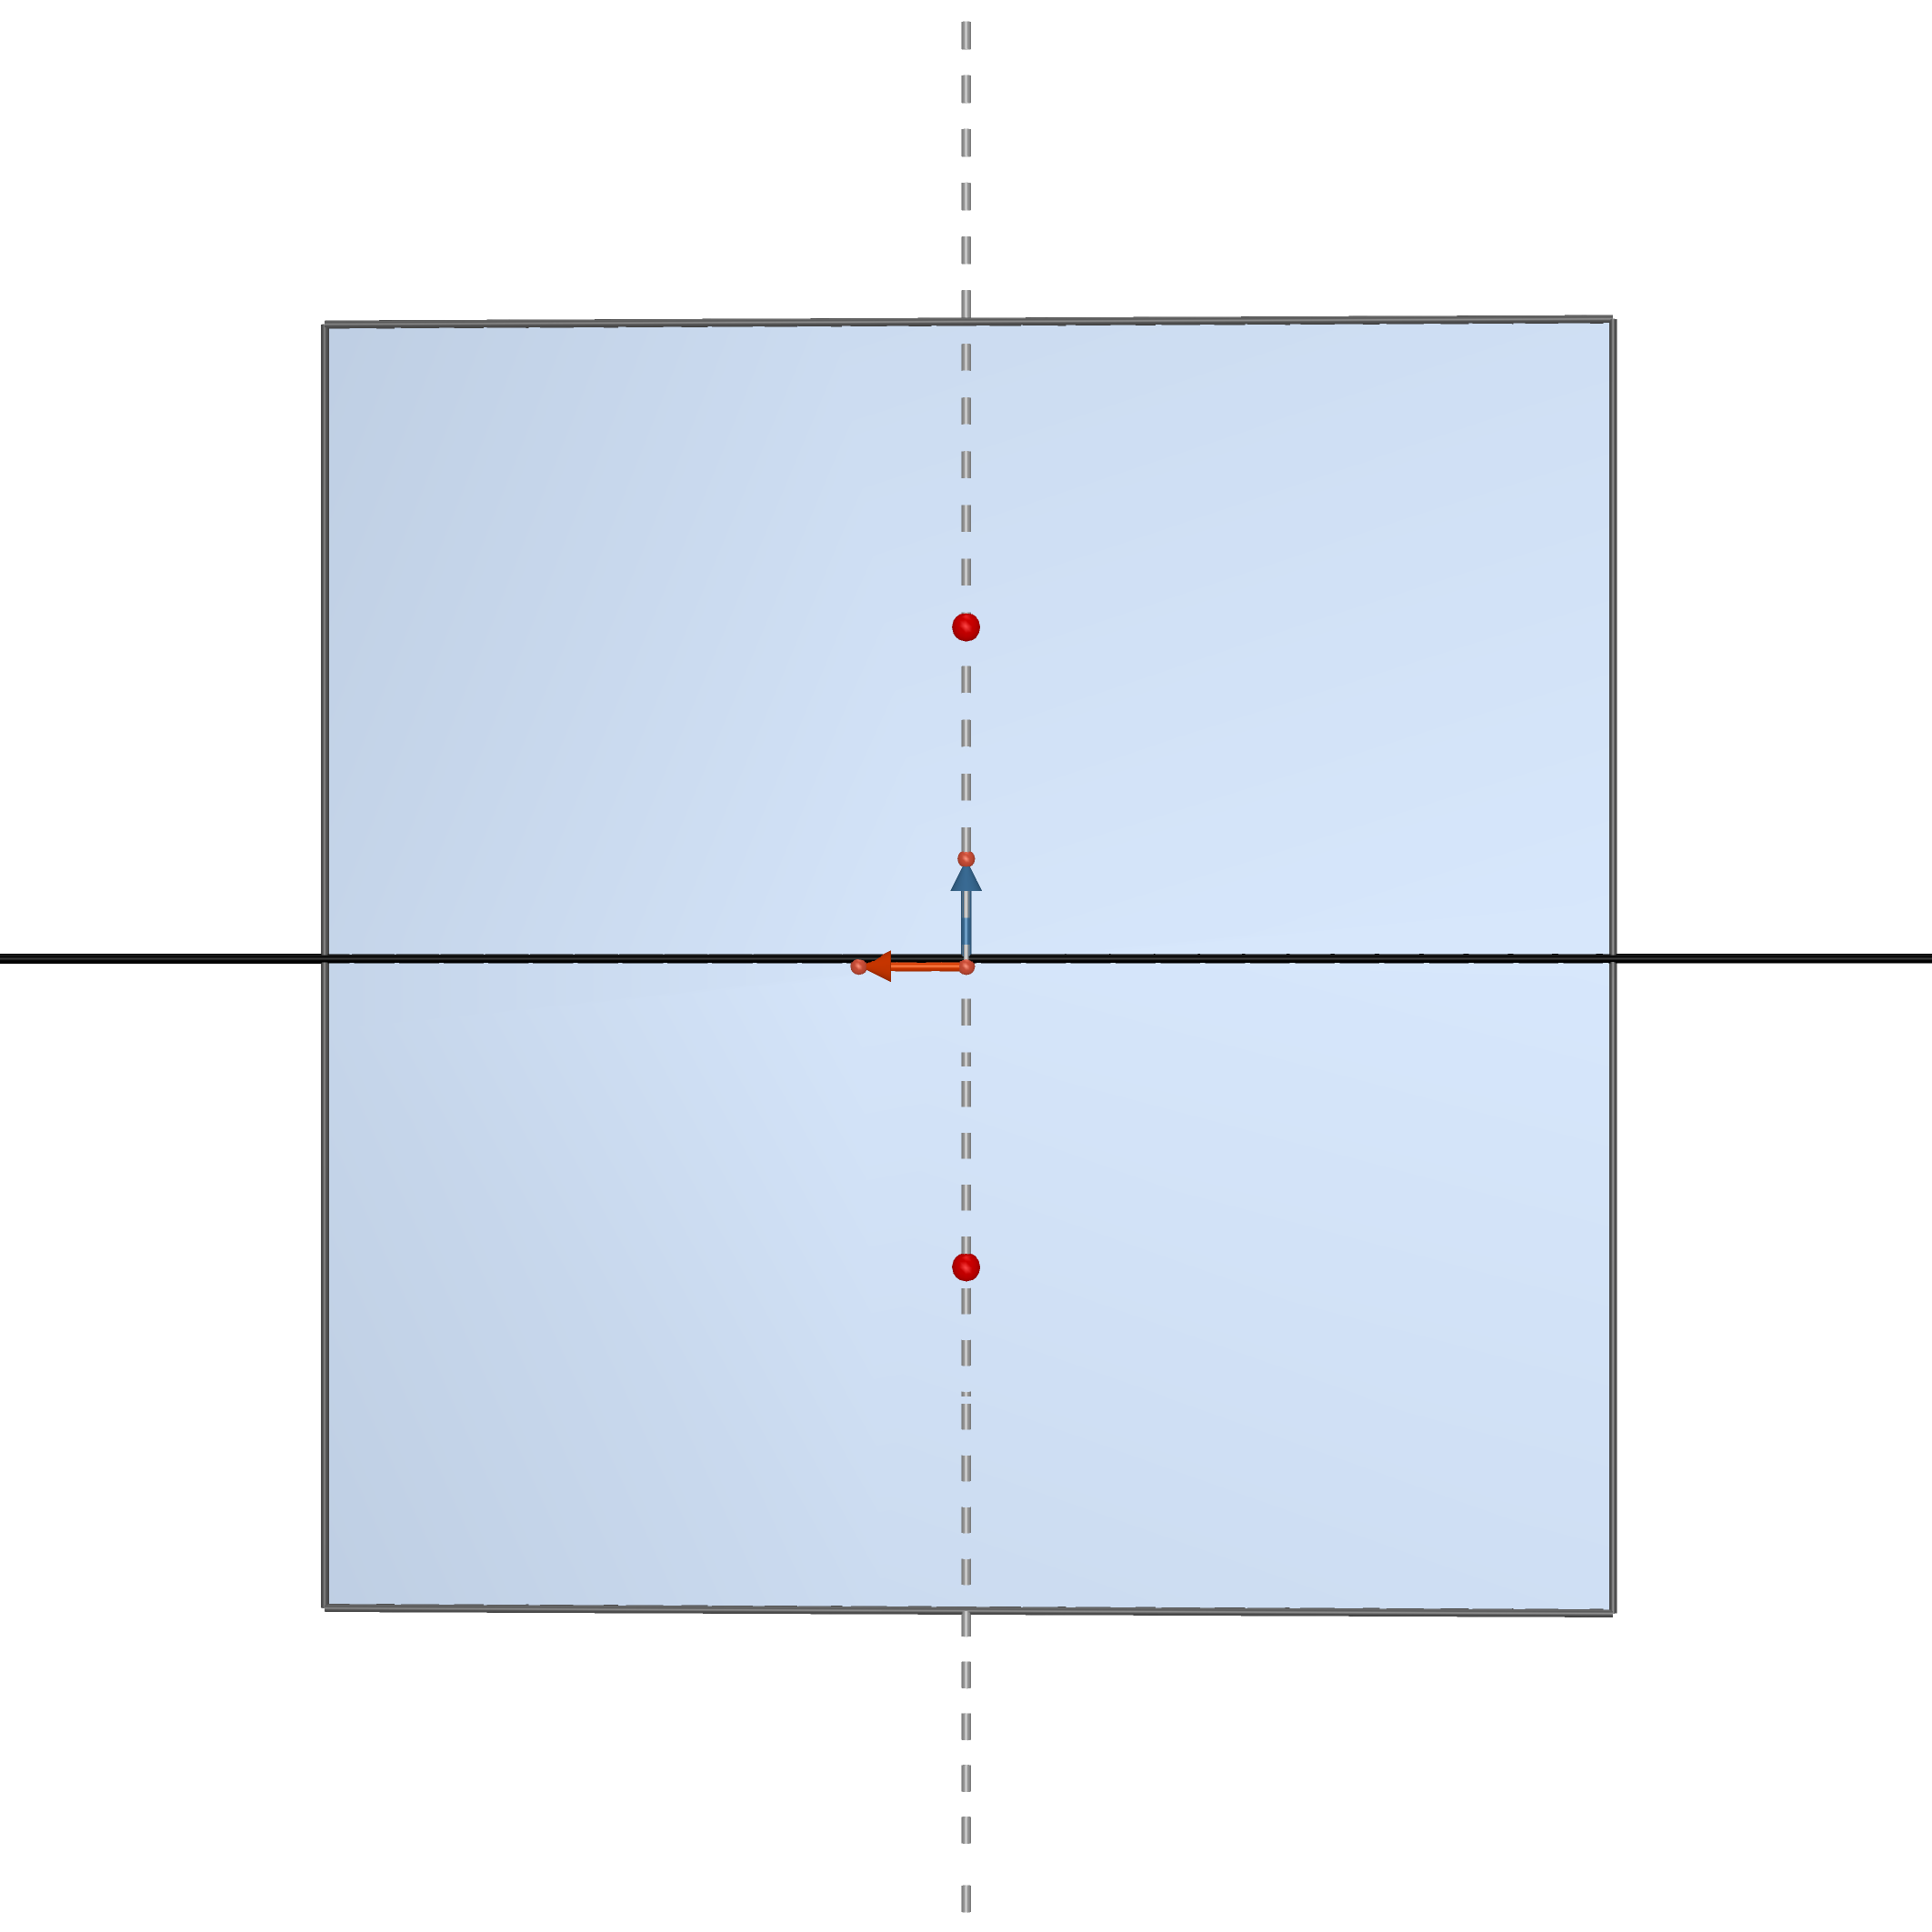 1.2 Základní pojmy Mongeovo promítání je pravoúhlé promítání na dvě na sebe navzájem kolmé průmětny (π a ν). Průmětna π je první průmětna, půdorysna, průmětna ν je druhá průmětna, nárysna.